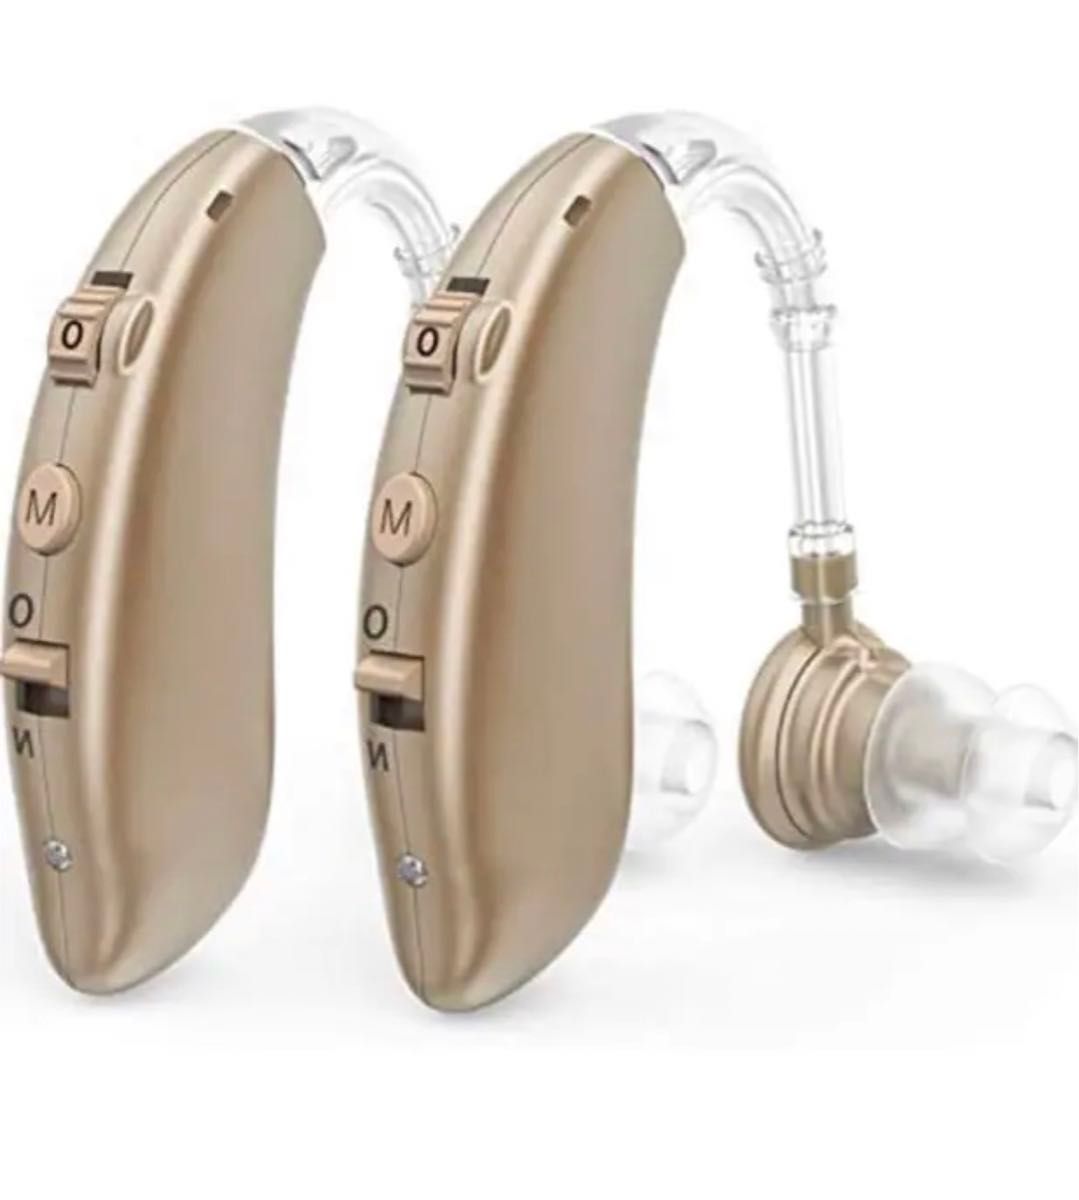 集音器 充電式 軽量 左右両用耳掛け式 4種類モード 音質切り替え機能を搭載 高級シリコーン 日本語取扱説明書付き